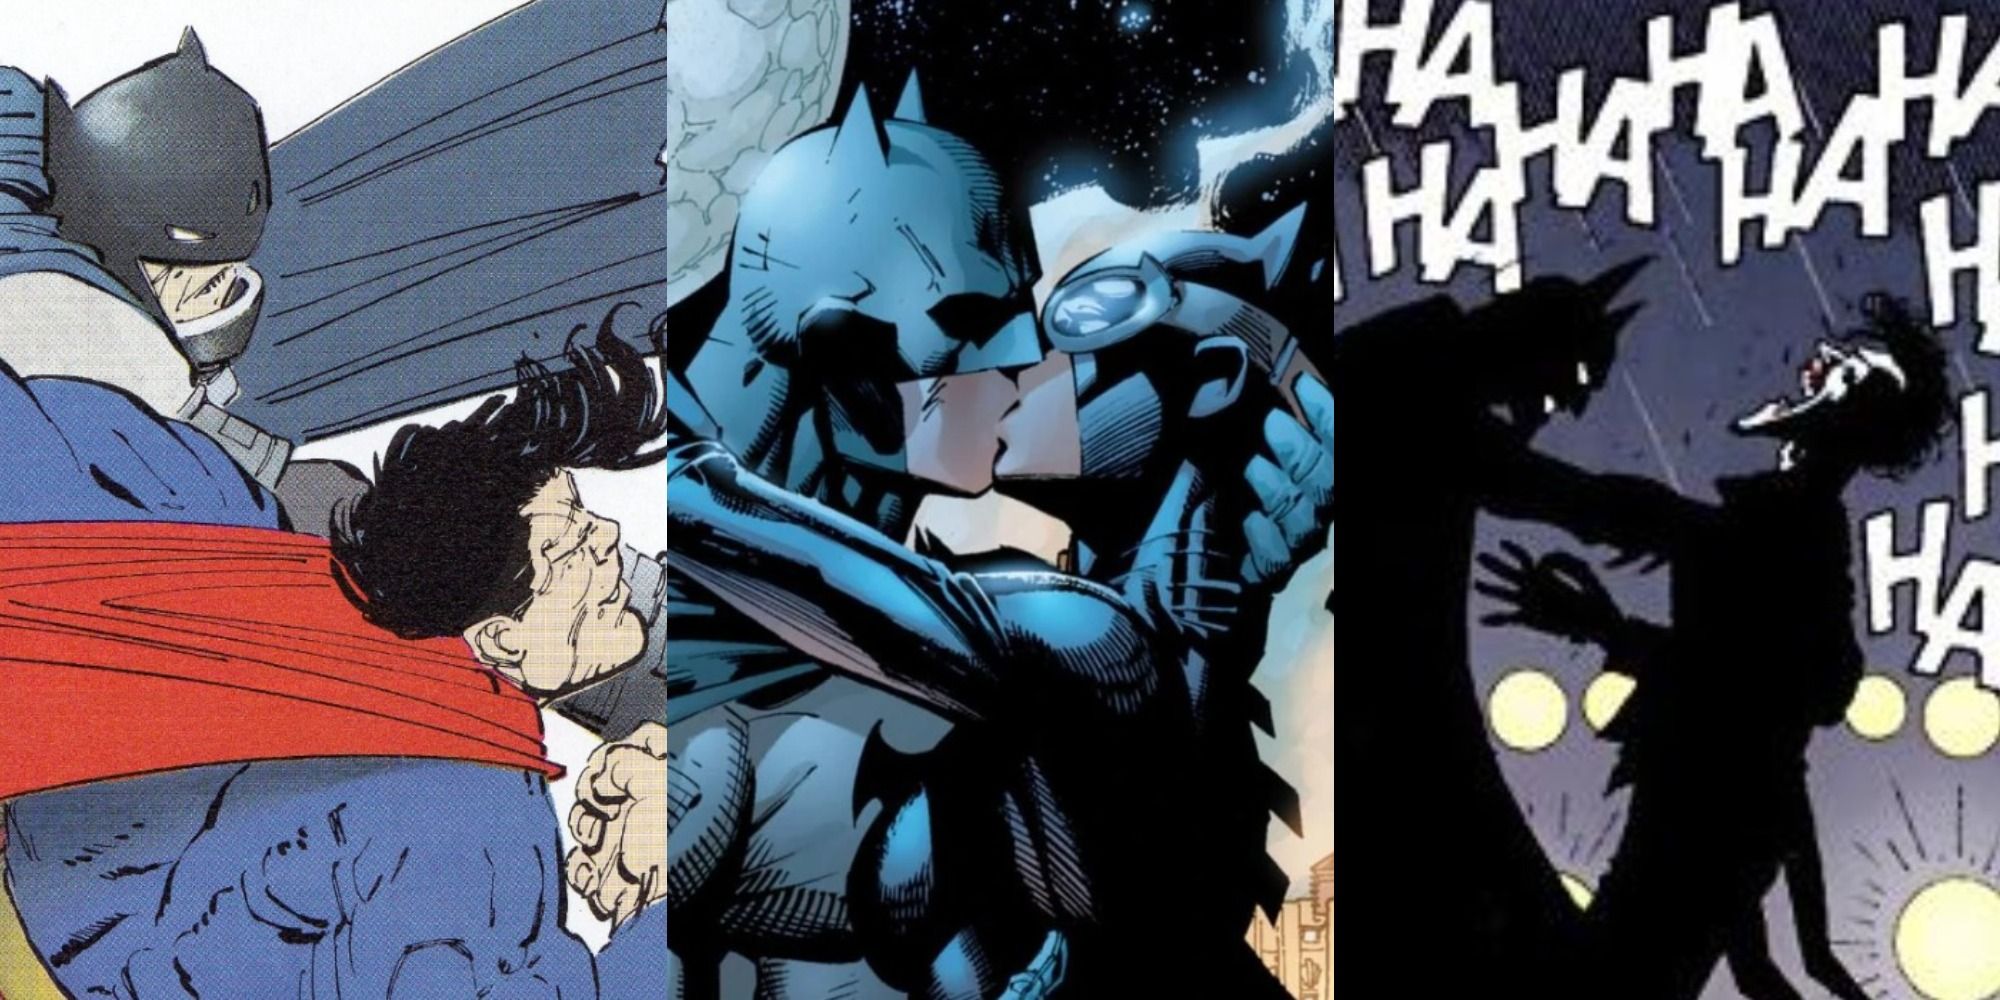 A split image of iconic Batman comic panels